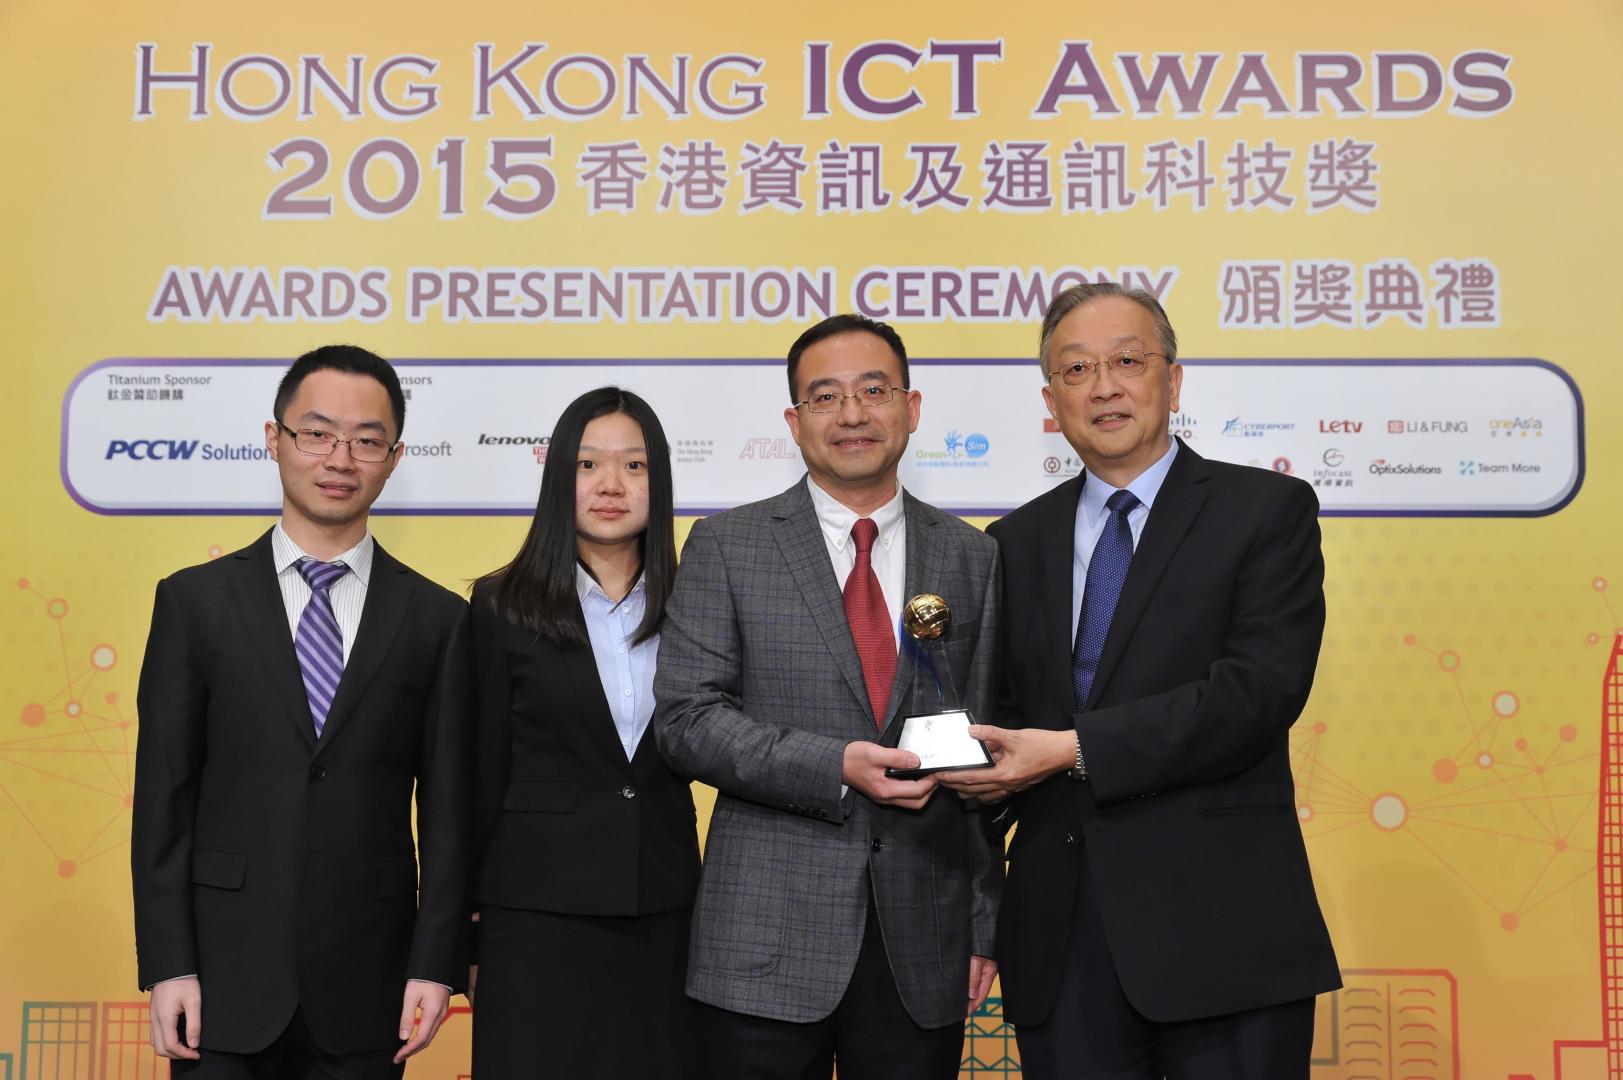  屈华民教授(左三)及其团队获颁香港资讯及通讯科技最佳创新银奖。